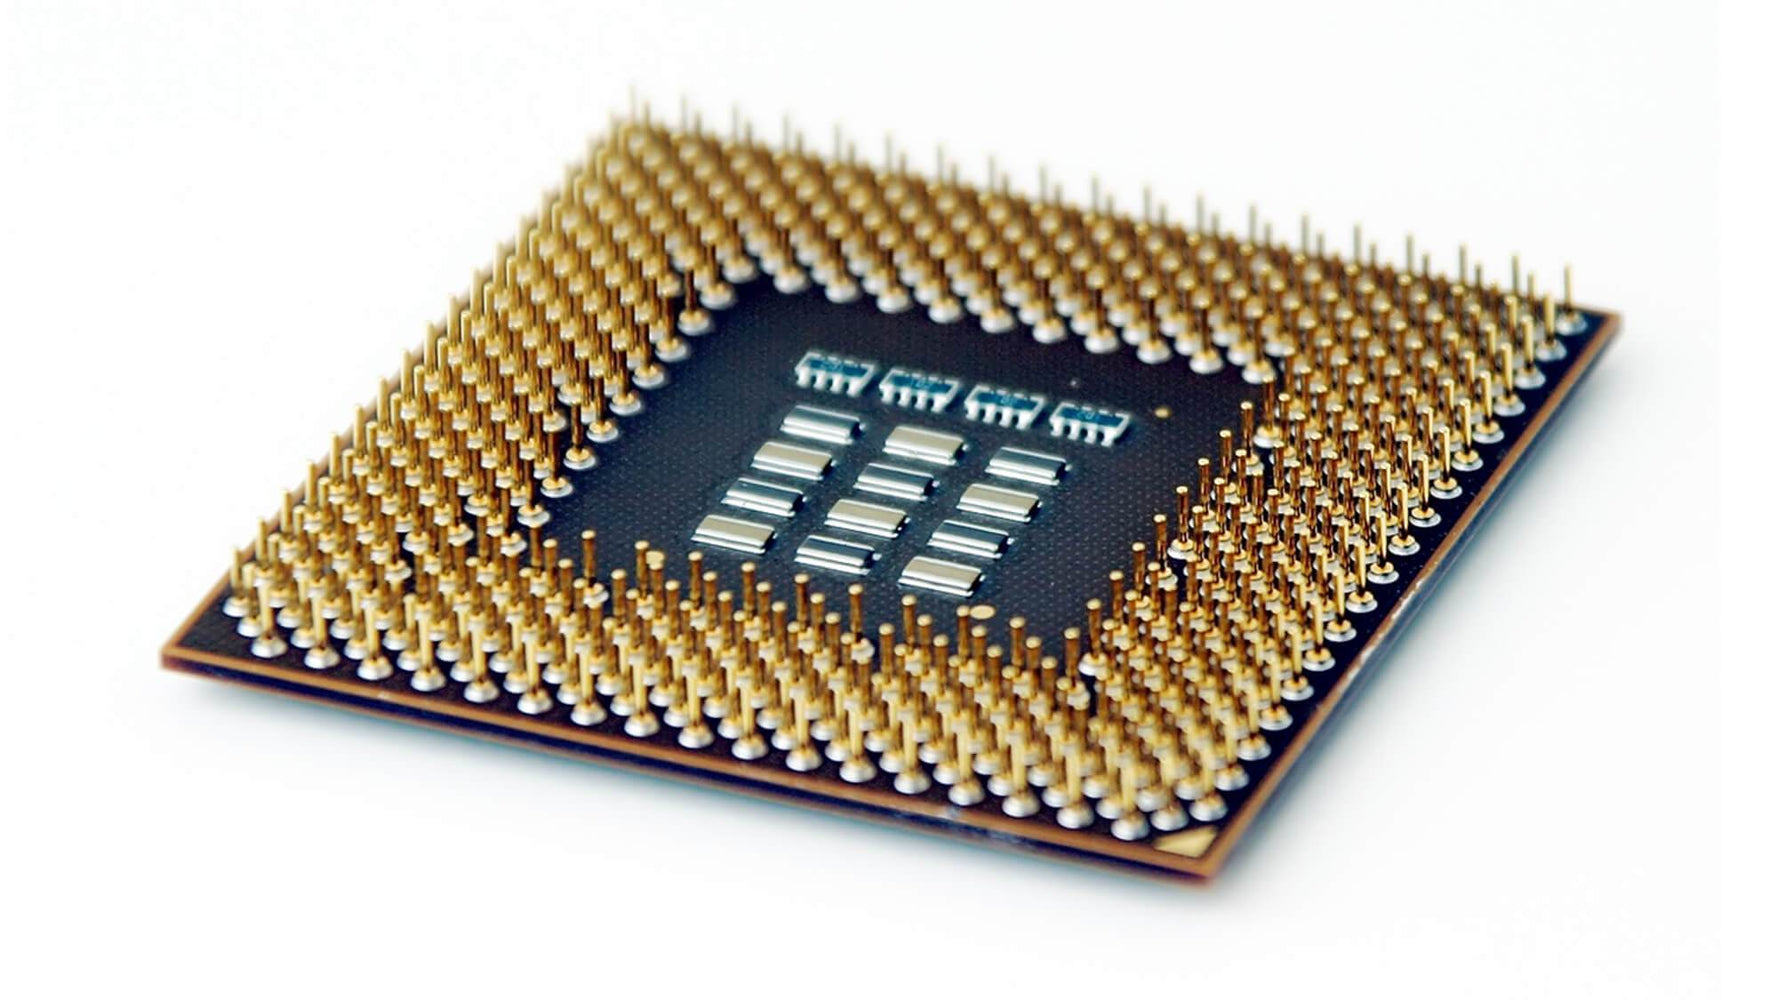 764100-L21 - HP 1.8GHz 9.6GT/s QPI 30MB SmartCache Socket LGA2011 Intel Xeon E5-2650L V3 12-Core Processor